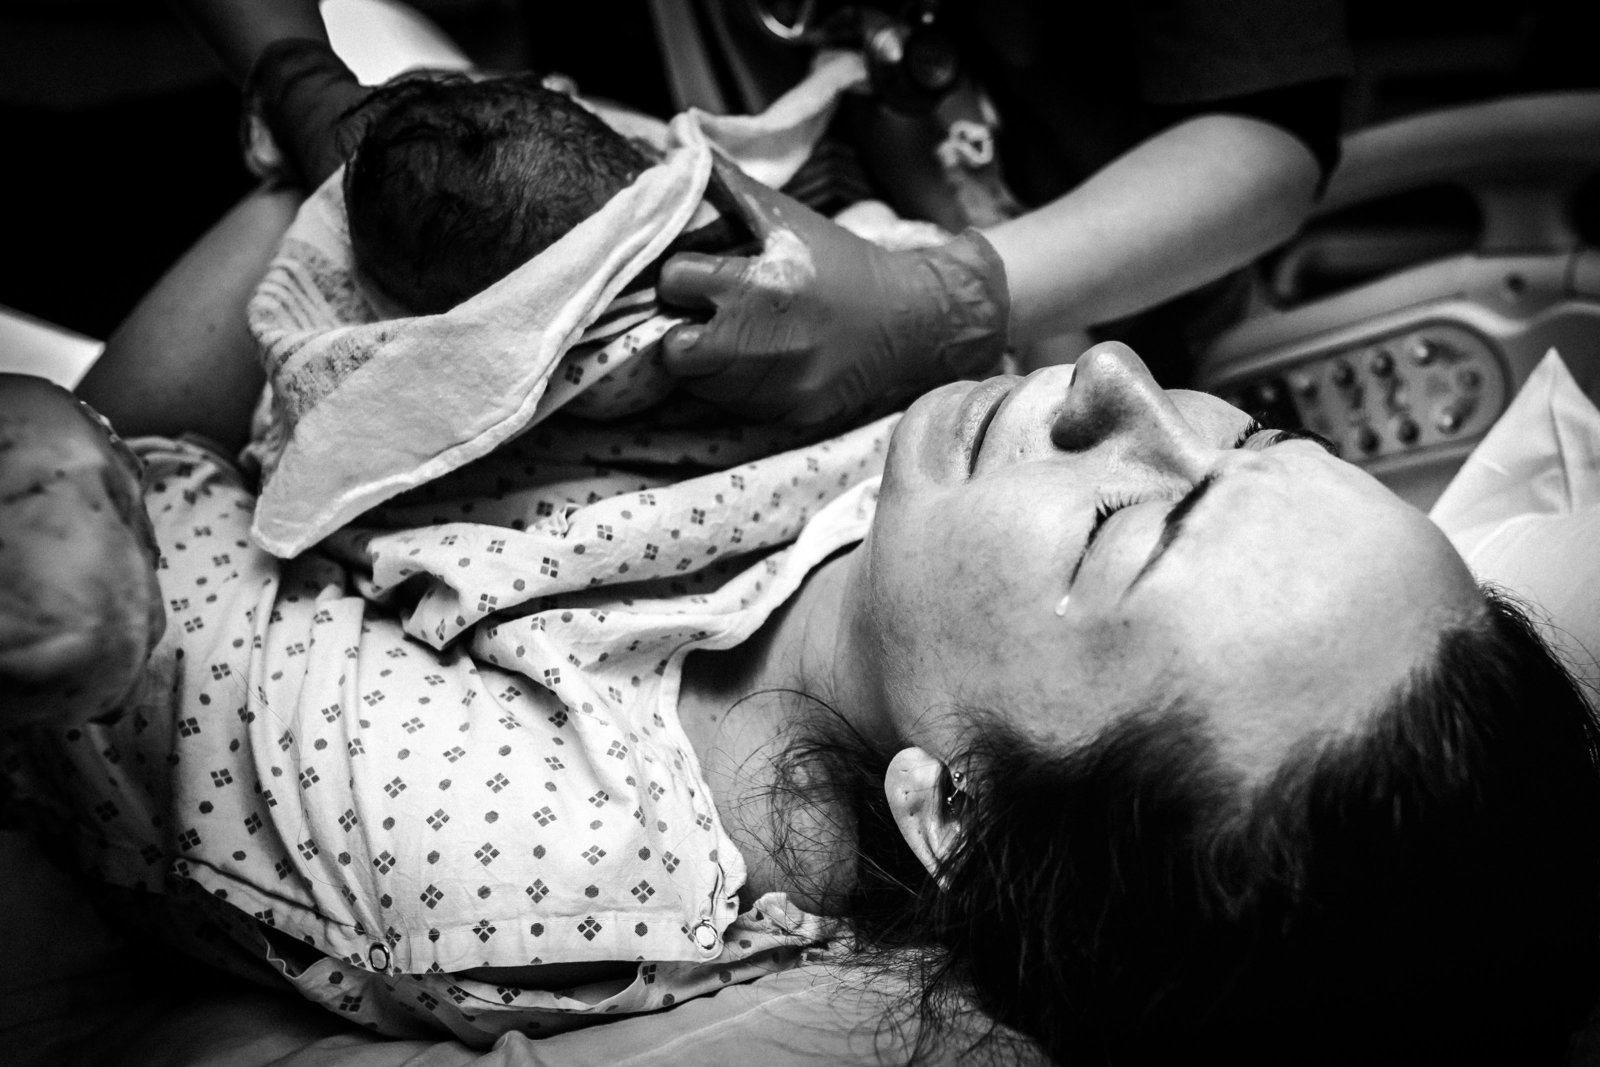 gw-hospital-birth-photography